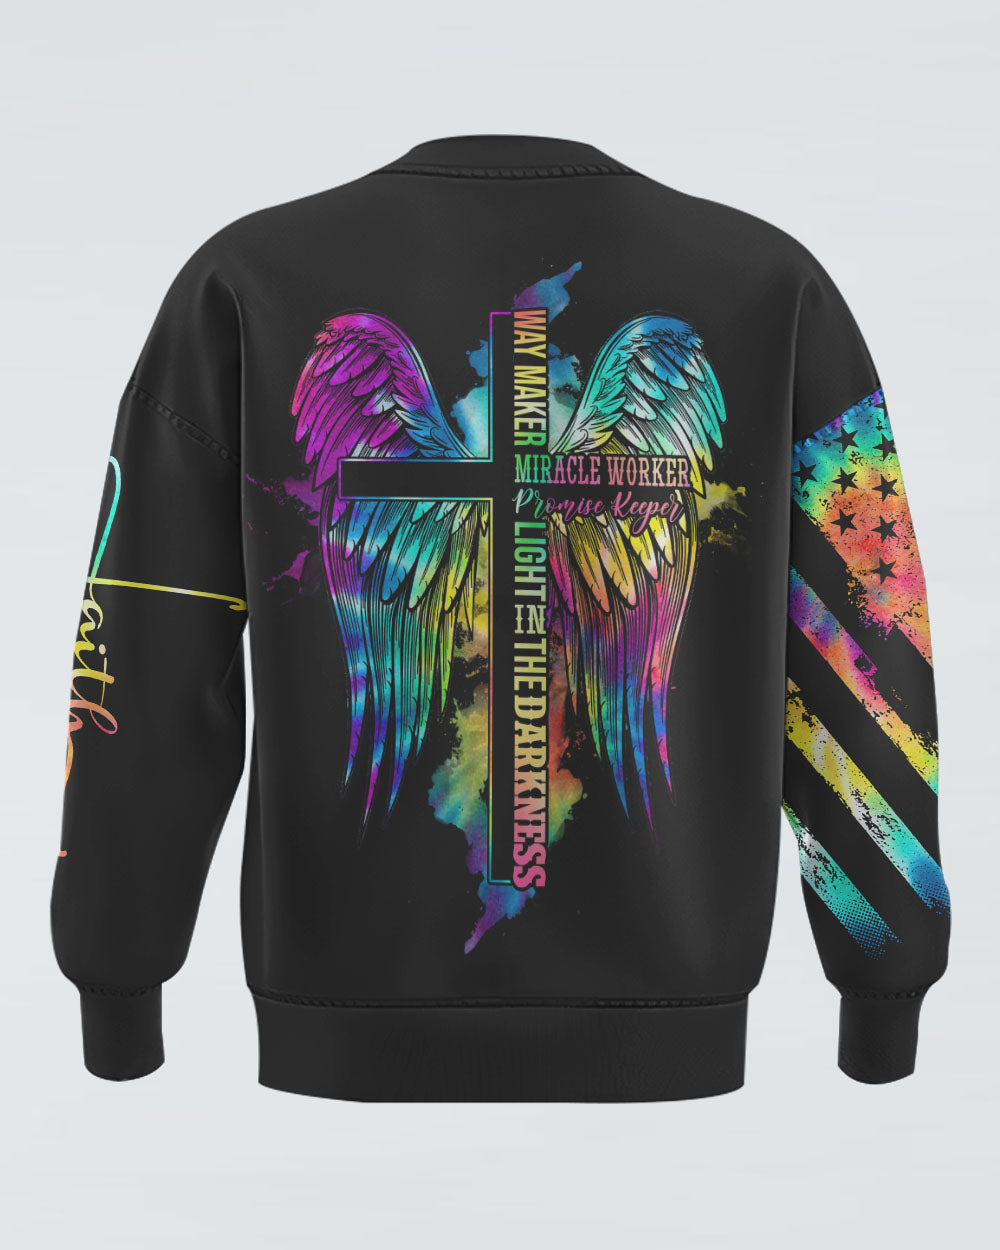 Way Maker Miracle Worker Cross Wings Tie Dye Women's Christian Sweatshirt